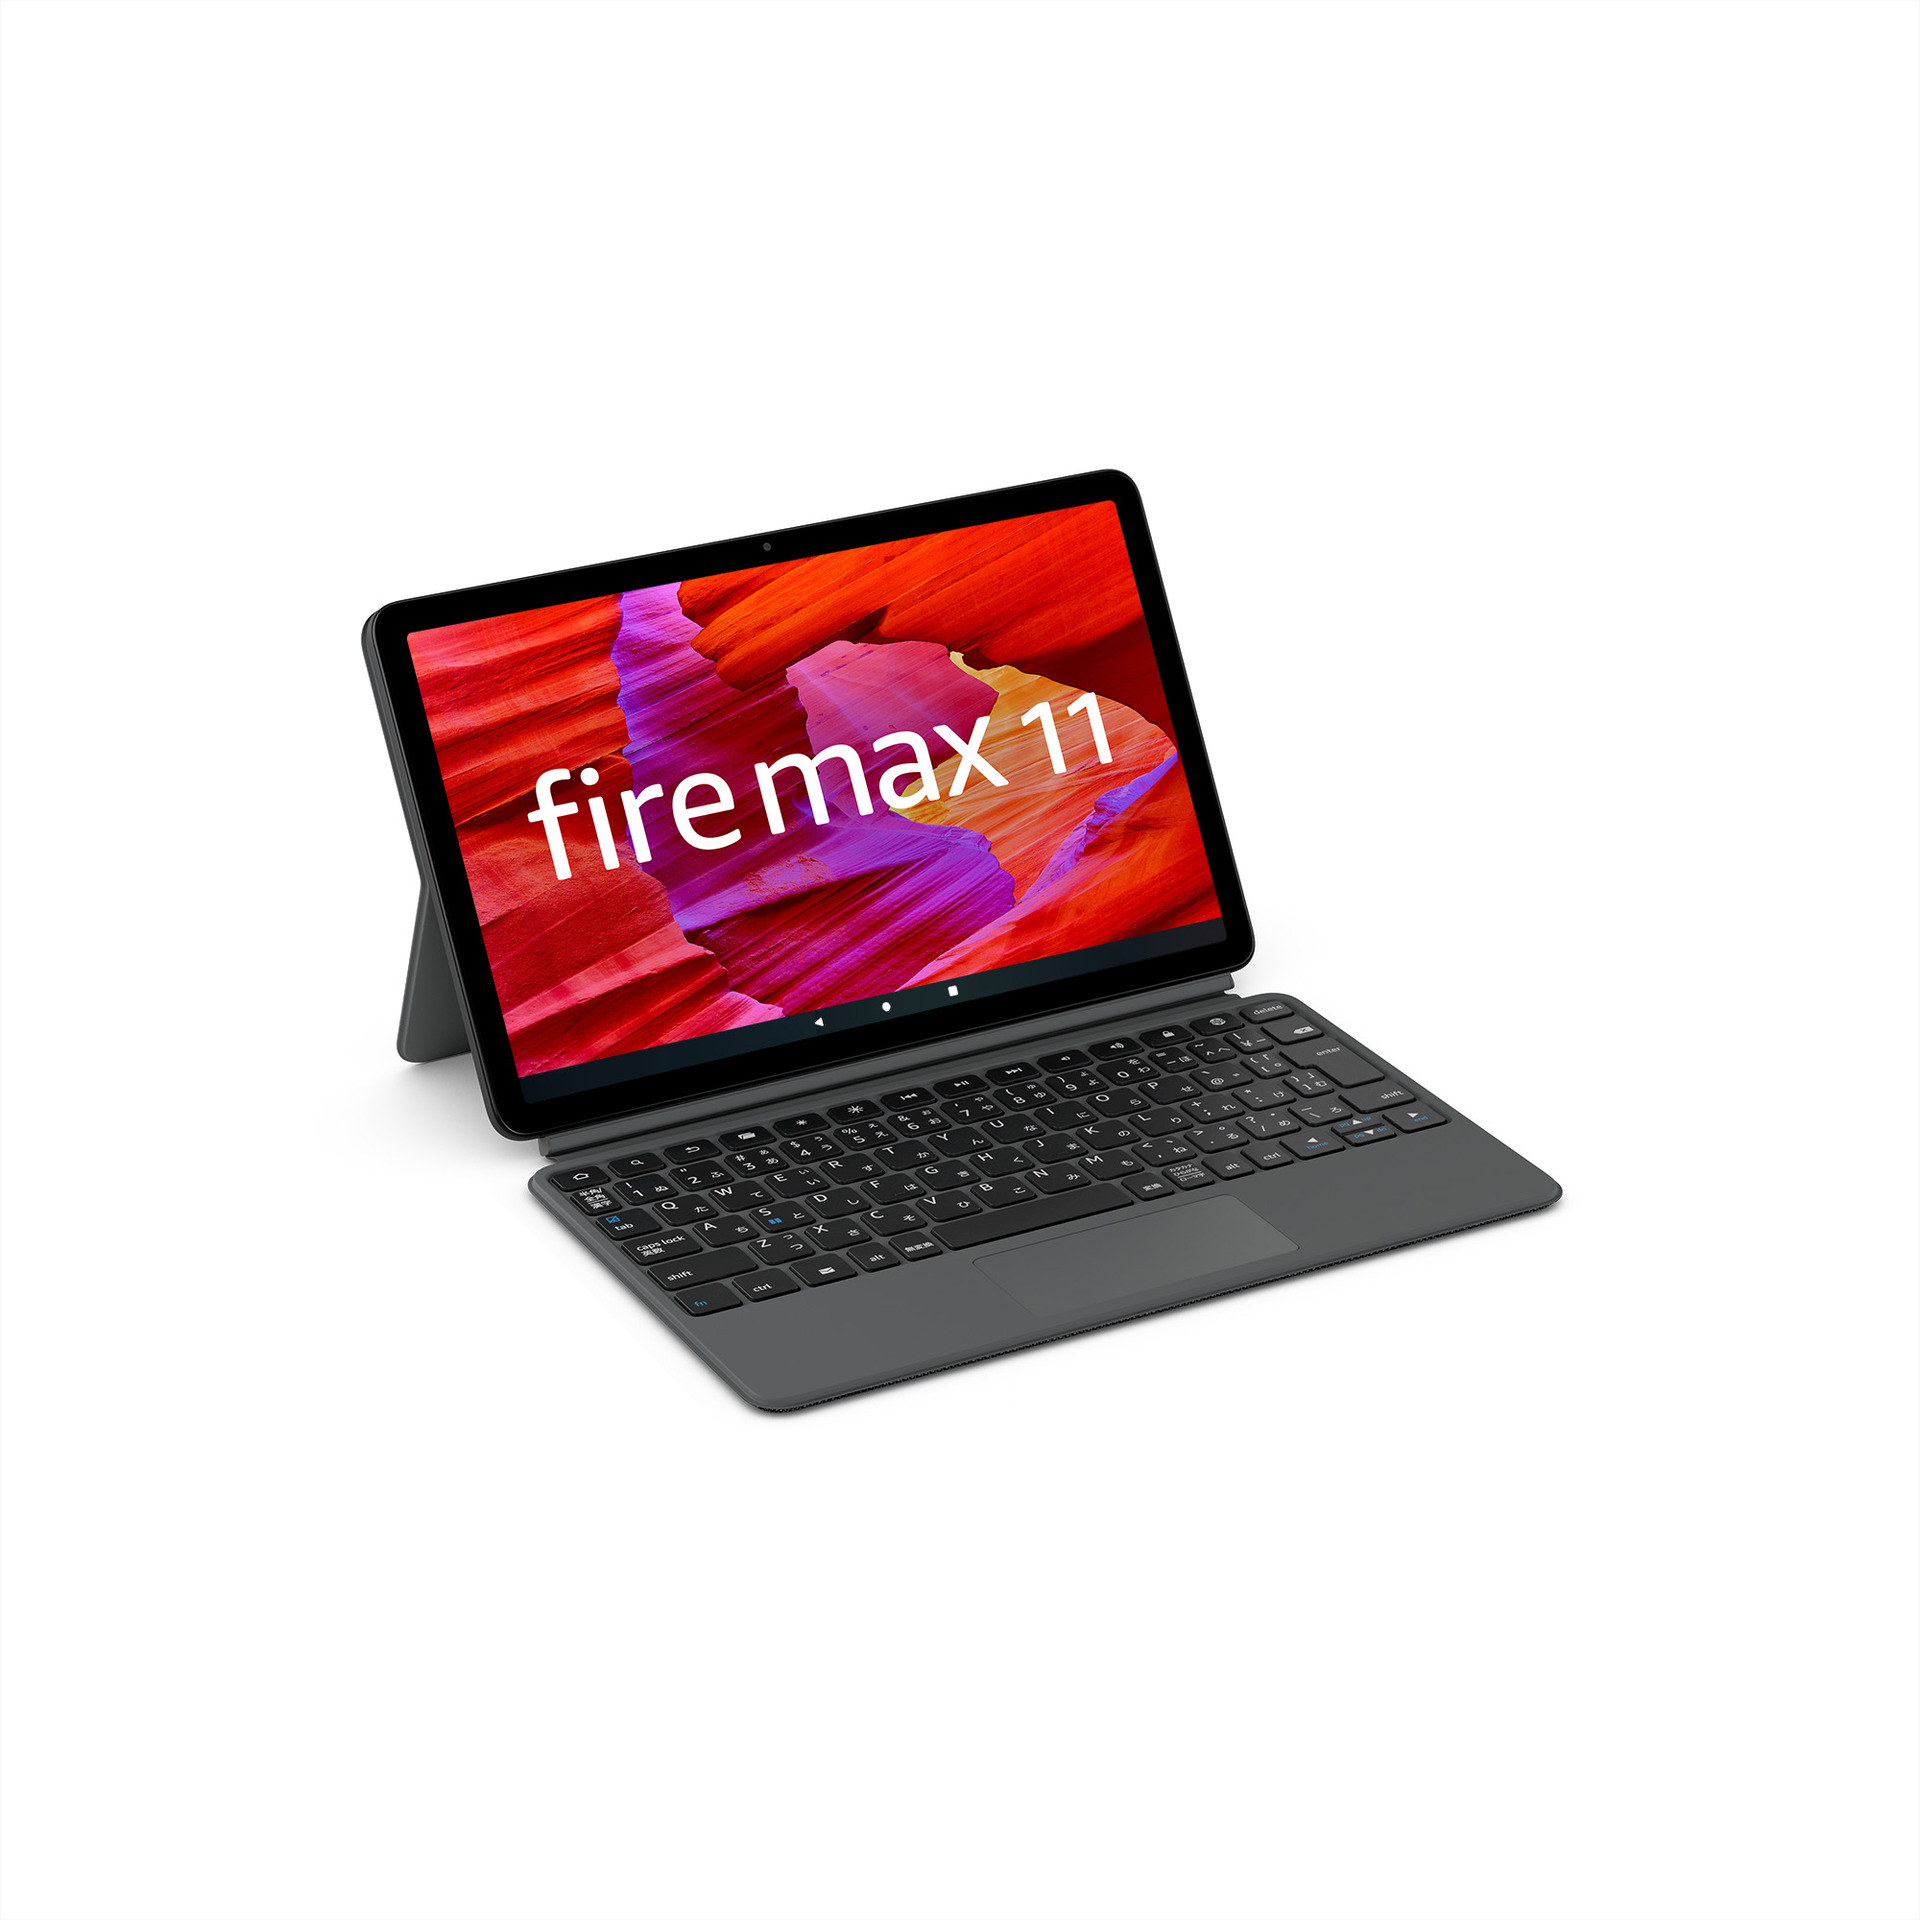 アマゾンFire Max 11発表。最大画面サイズで薄型化、スタイラス対応の